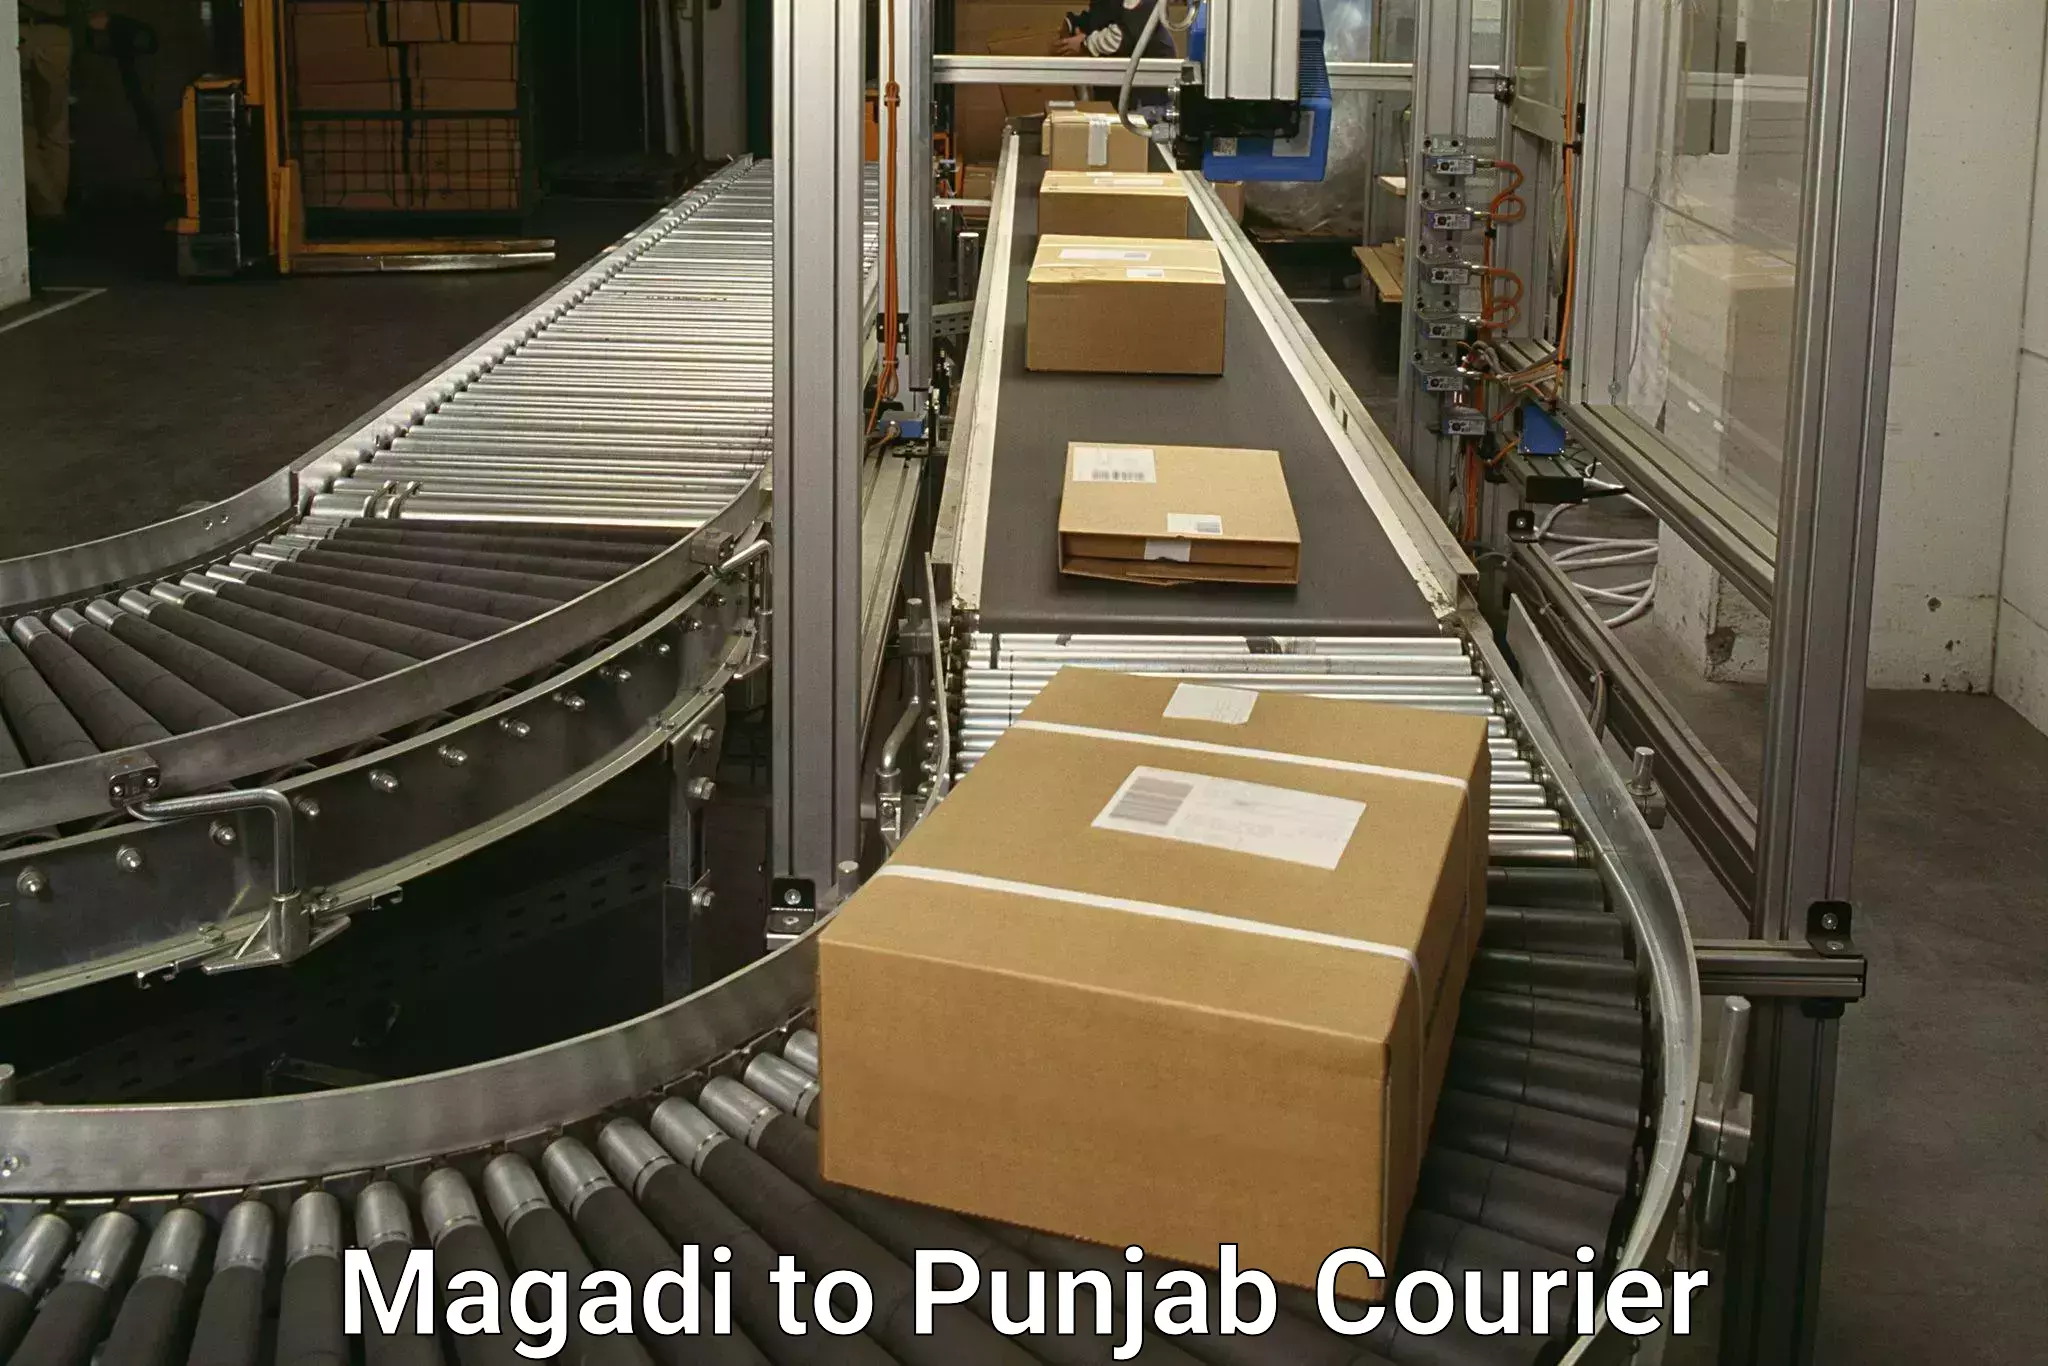 High-performance logistics Magadi to Punjab